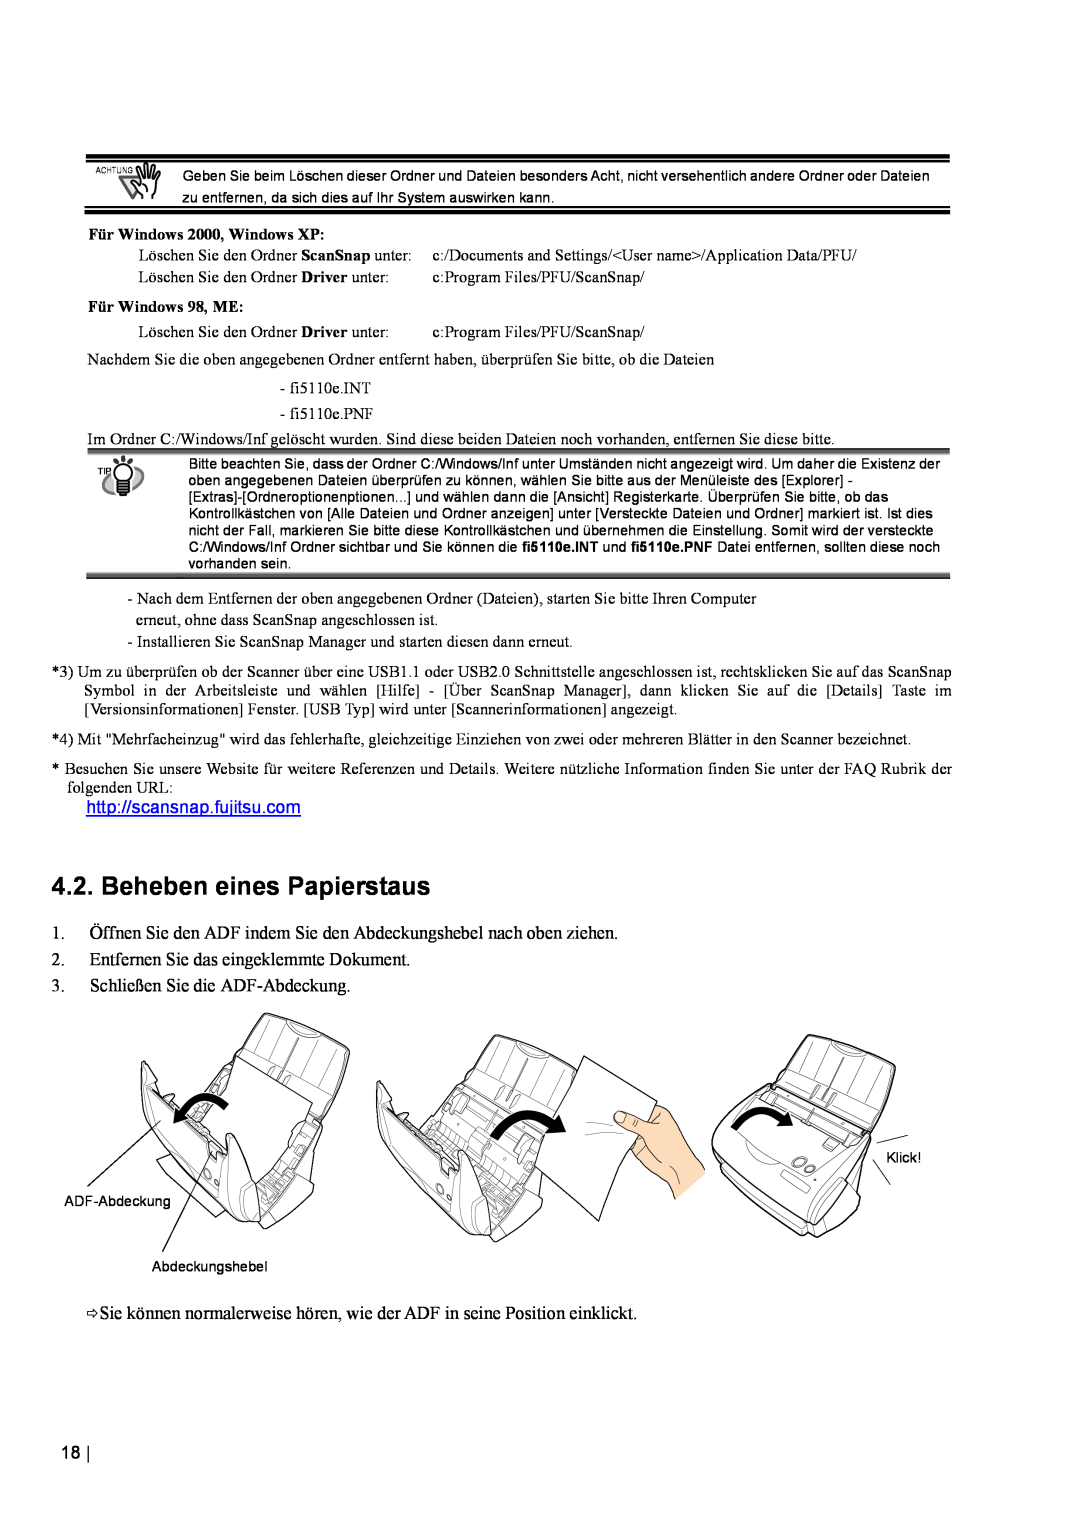 Fujitsu fi-5110EOX2 manual Beheben eines Papierstaus, http//scansnap.fujitsu.com, Entfernen Sie das eingeklemmte Dokument 